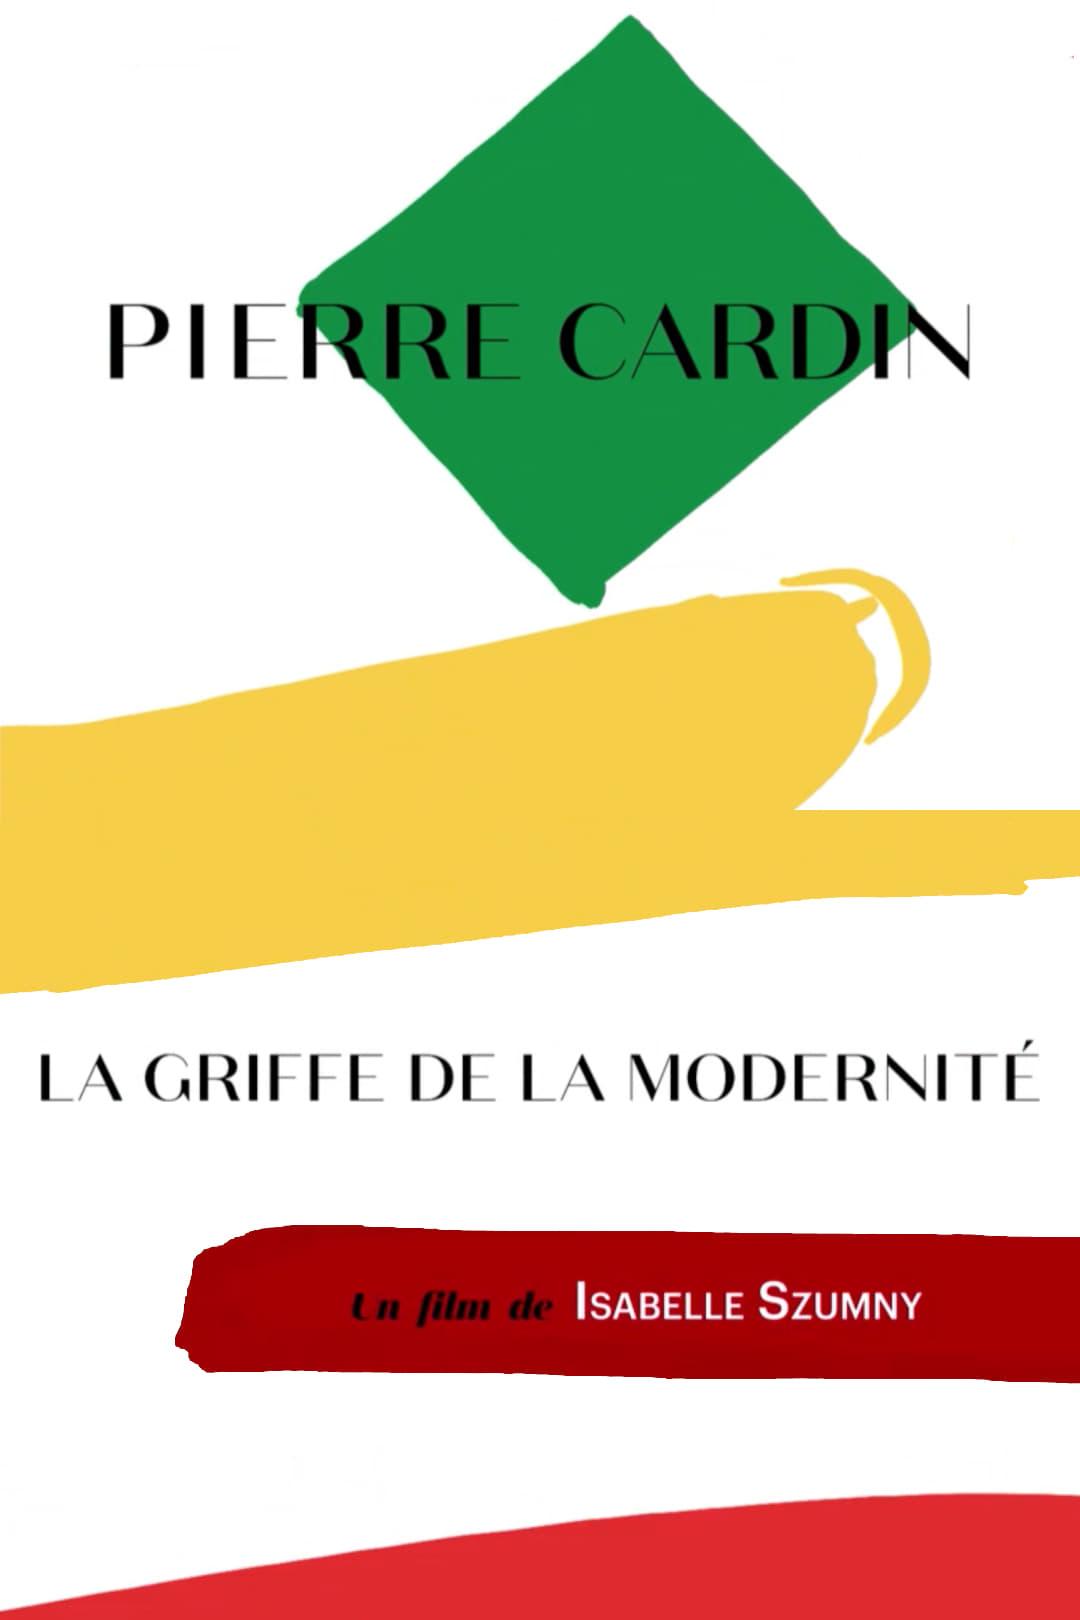 Pierre Cardin - La griffe de la modernité poster